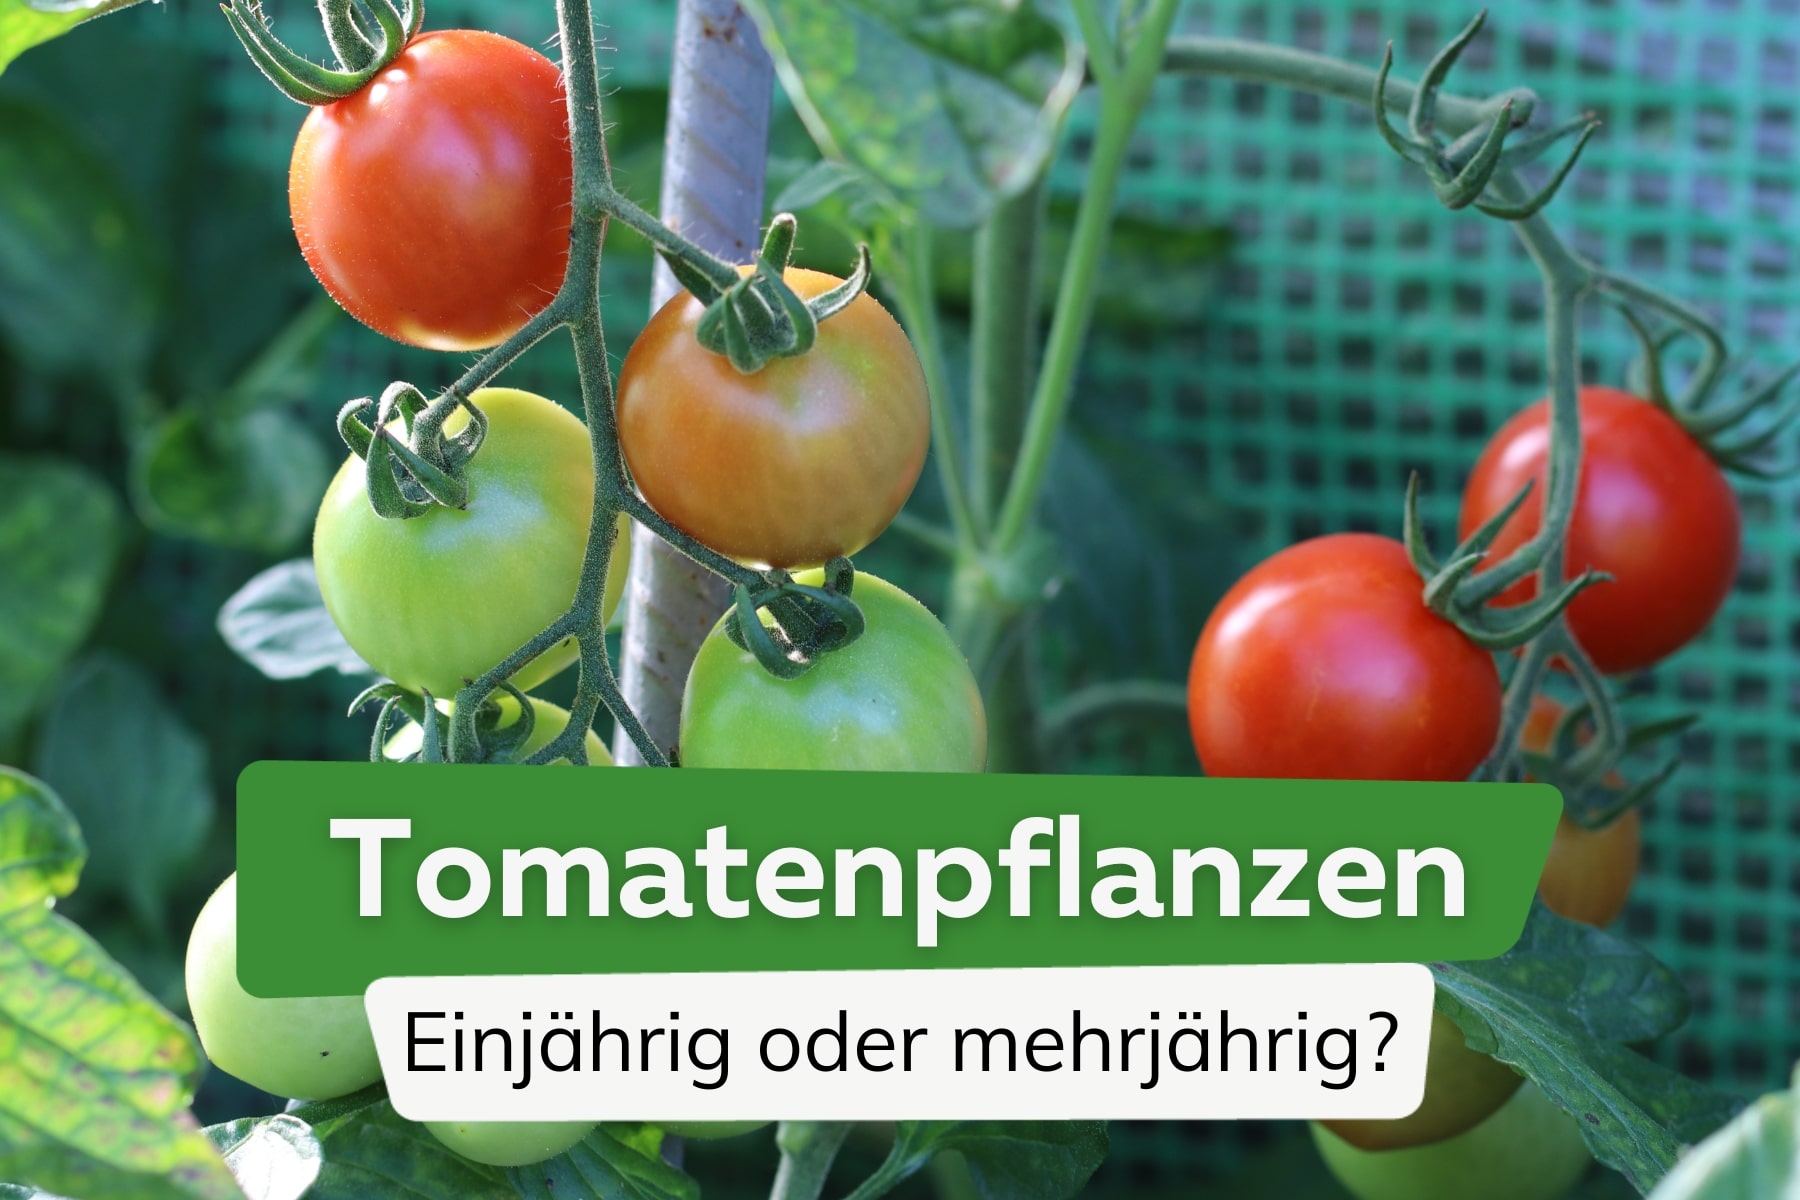 Sind Tomatenpflanzen einjährig oder mehrjährig?